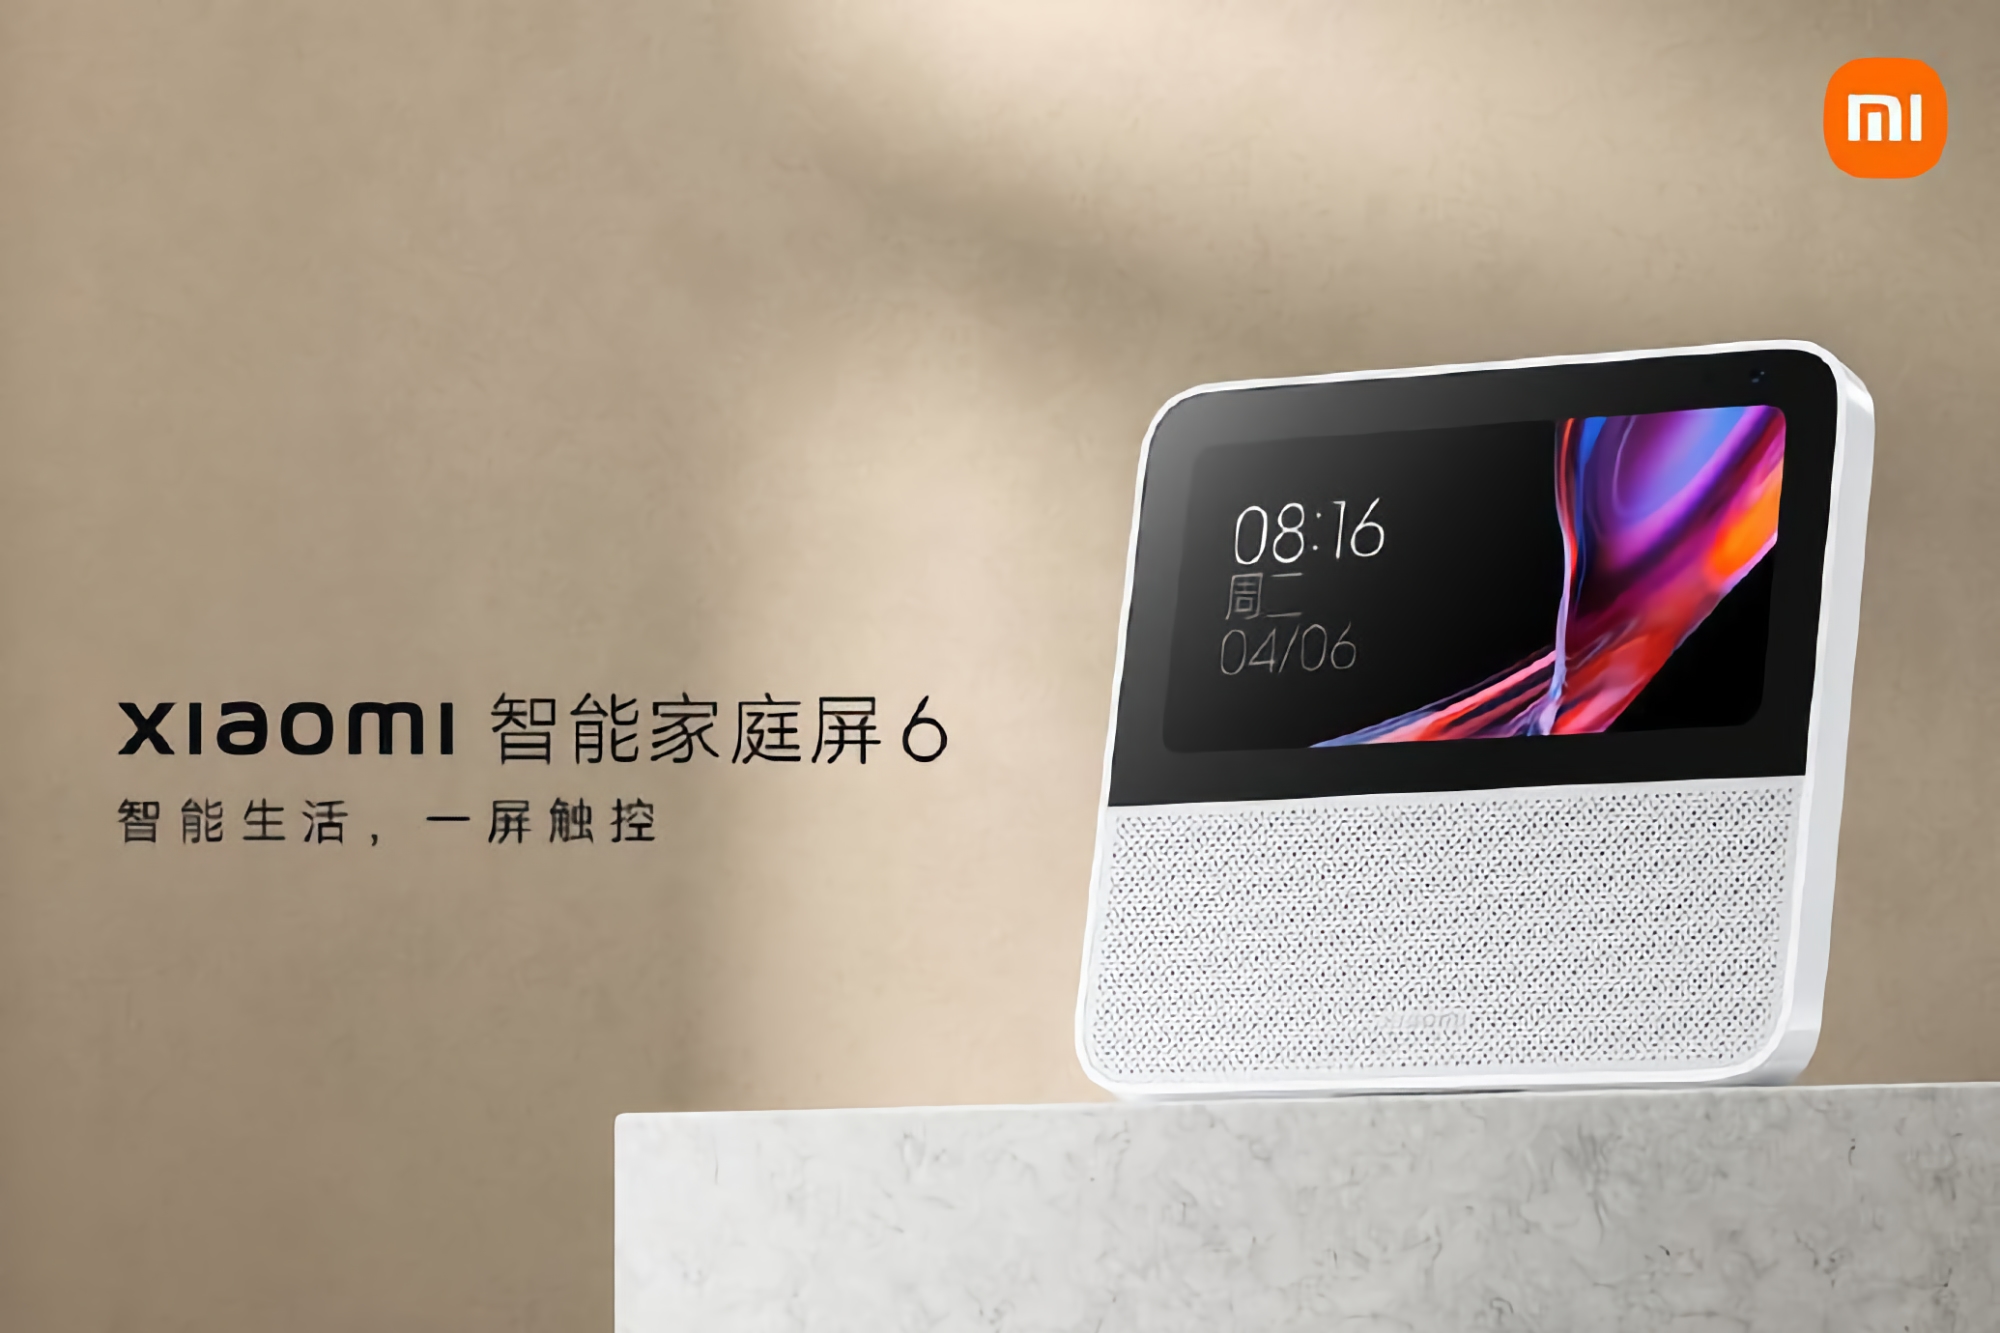 Xiaomi presenta el Smart Home Display 6: pantalla de 6 pulgadas, cámara de 2MP y asistente de voz integrado por 52 dólares